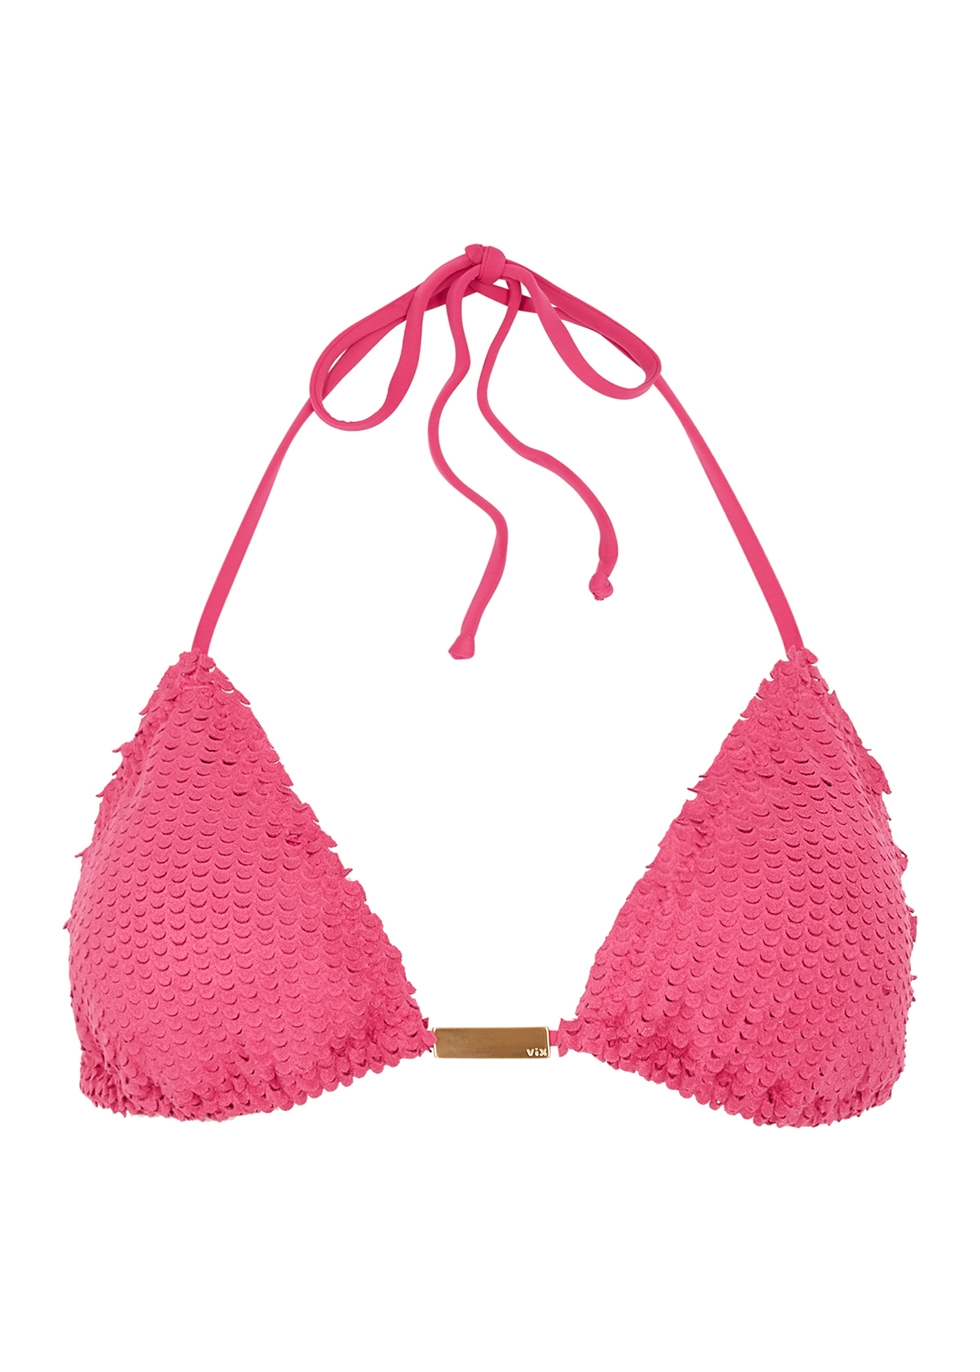 pink bikini top